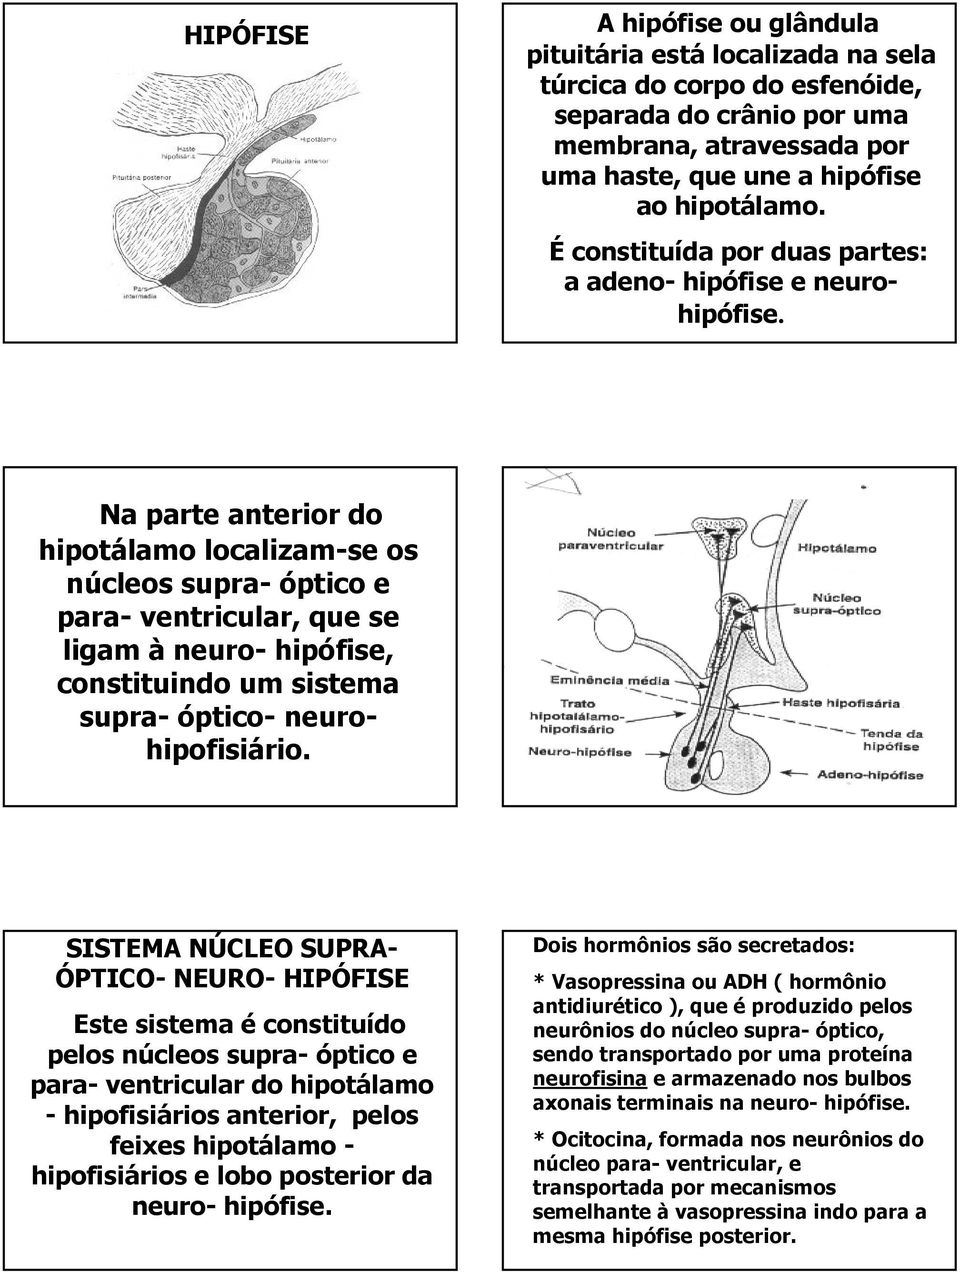 Na parte anterior do hipotálamo localizam-se os núcleos supra- óptico e para- ventricular, que se ligam à neuro- hipófise, constituindo um sistema supra- óptico- neurohipofisiário.